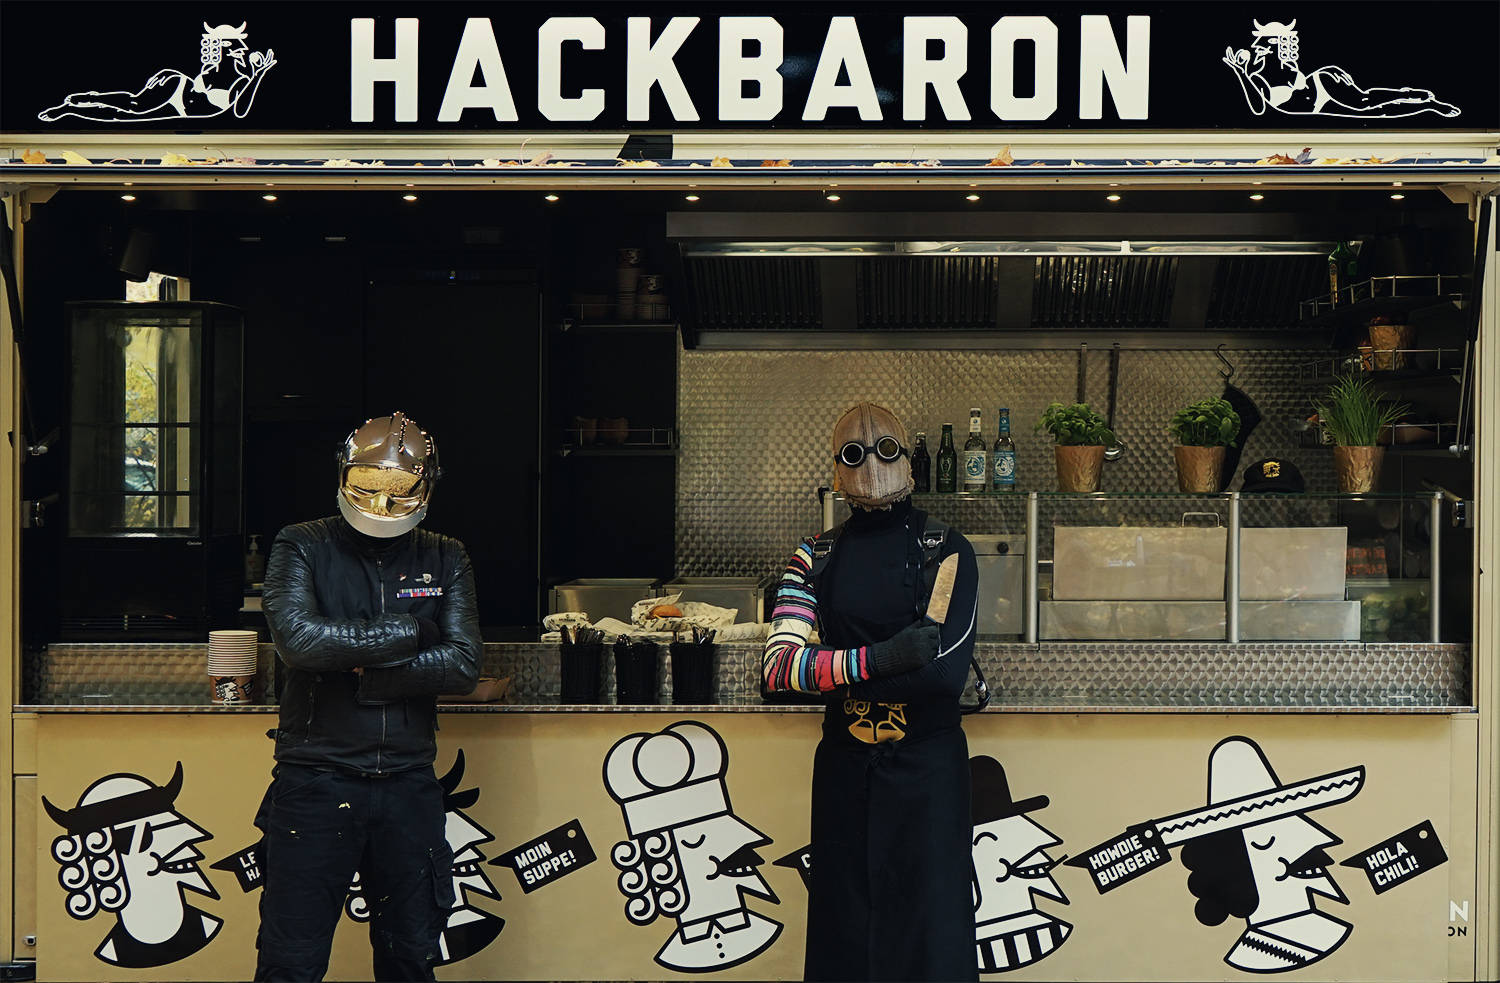 Hackbaron. Premium Food Company. 8